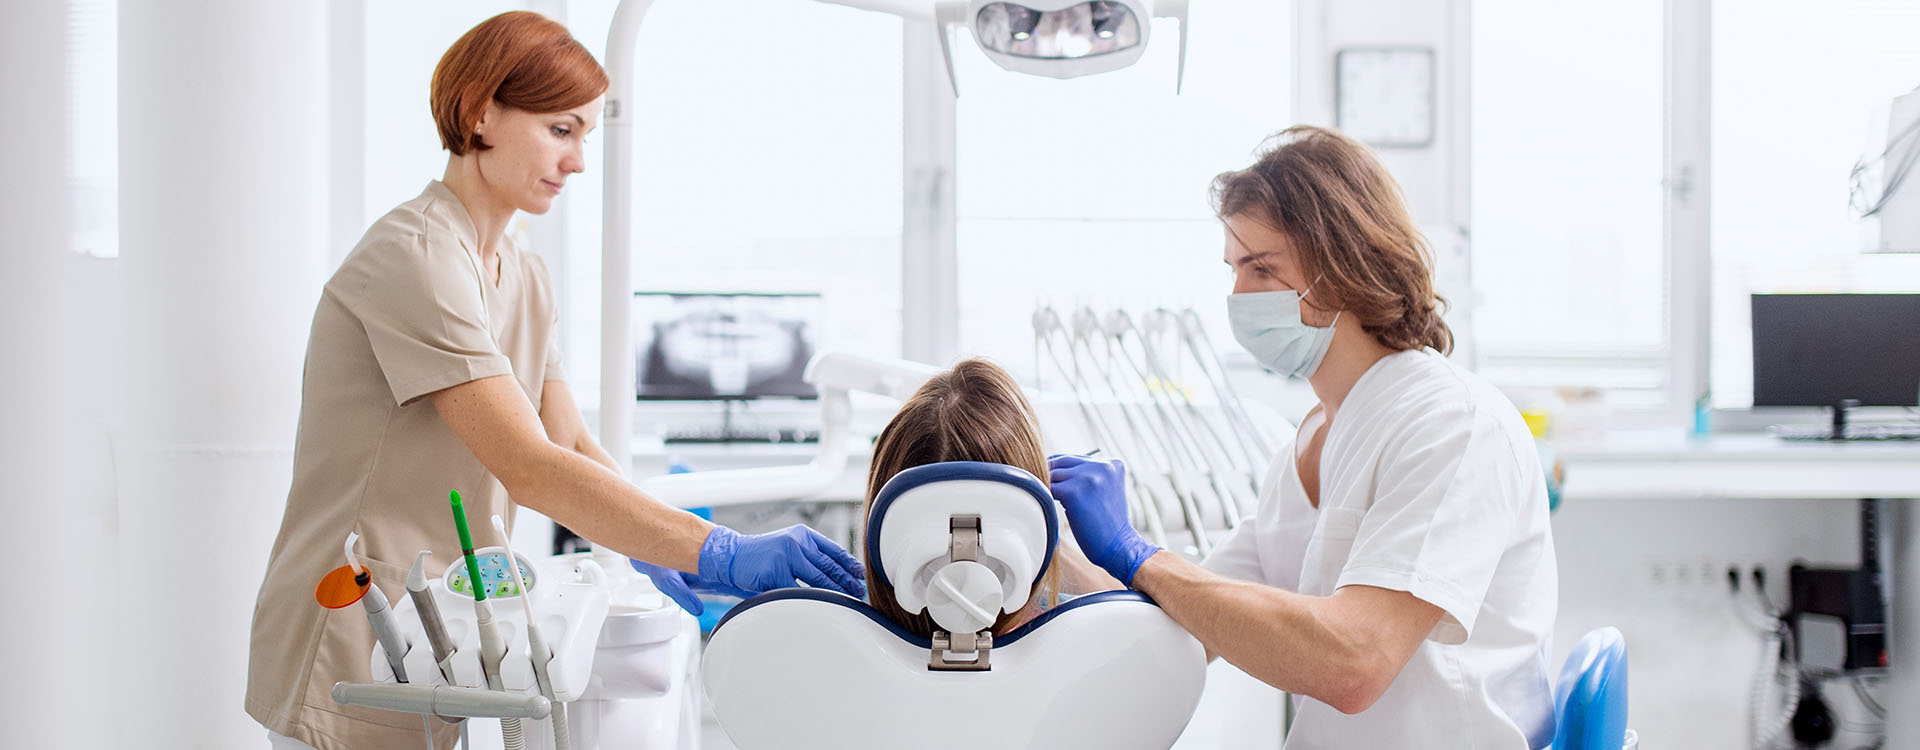 Clínica Dental Andrea Compte, tu Centro Odontológico especializado. Cirugía bucal en Alcossebre. Dentista y asistente realizando una cirugía.